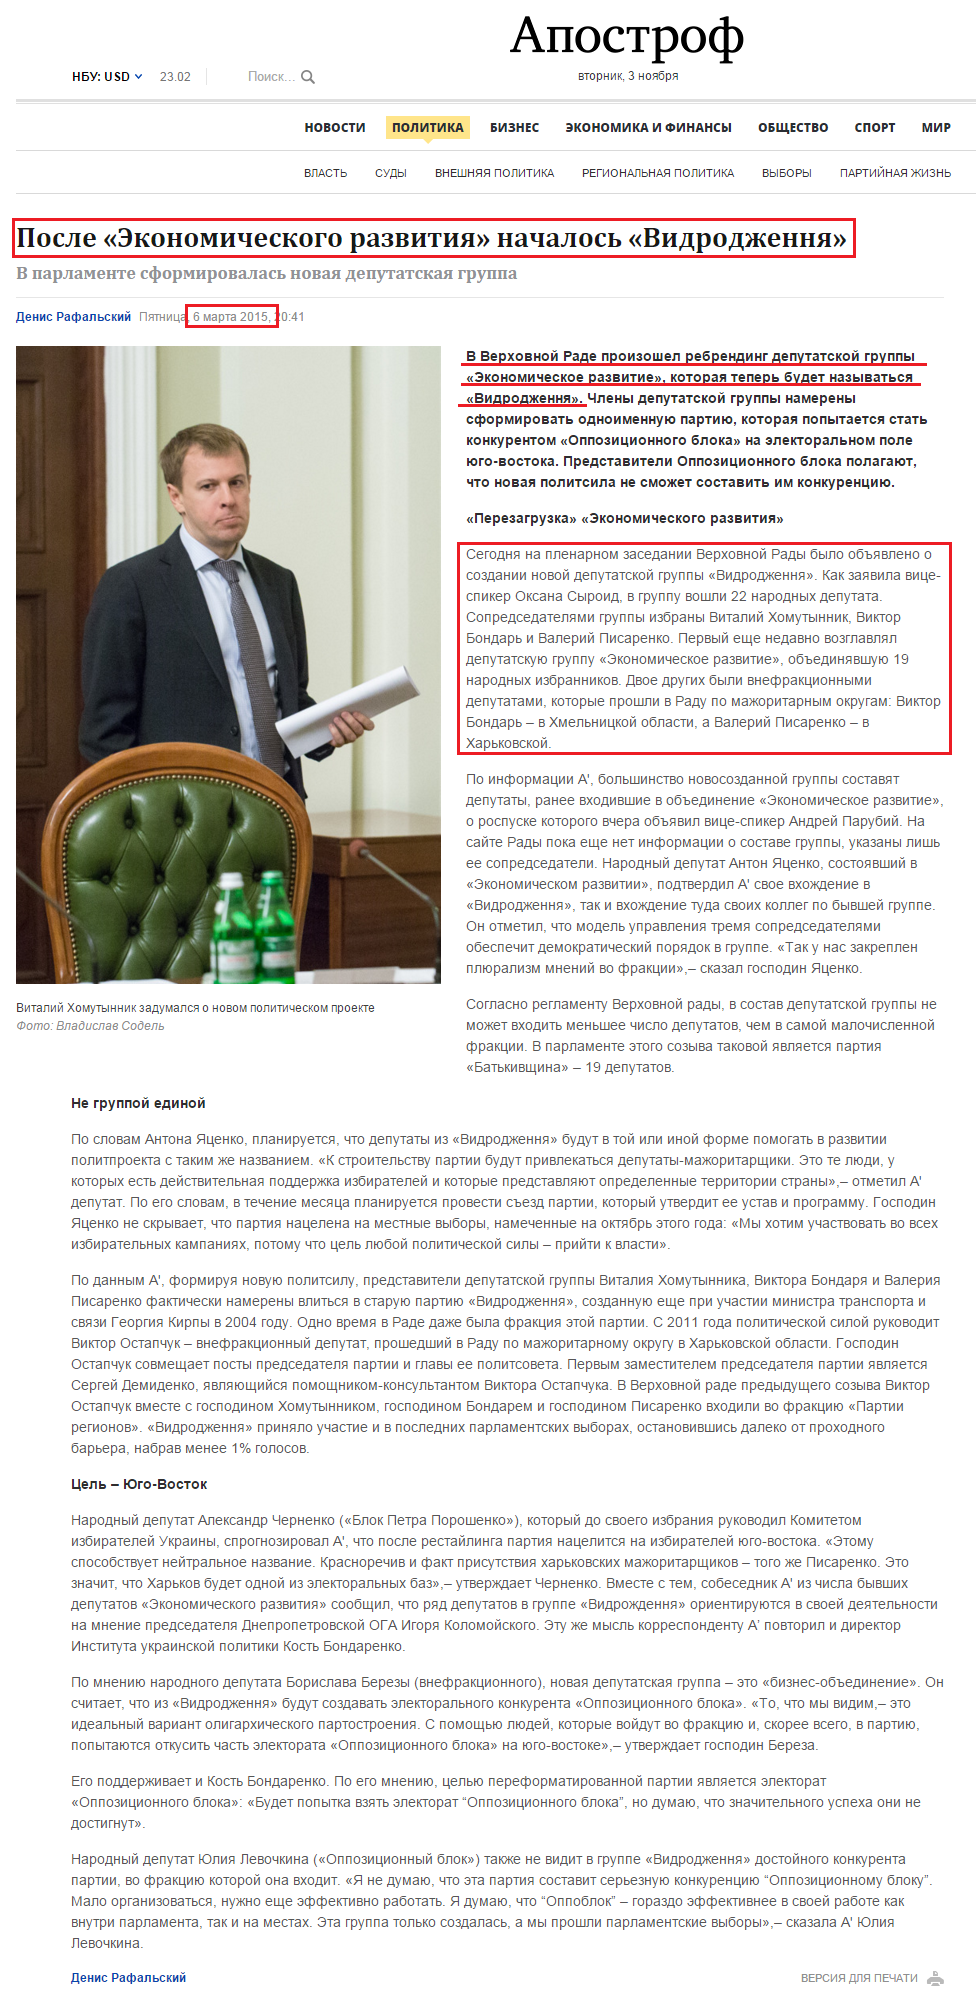 http://apostrophe.com.ua/article/politics/2015-03-06/posle-ekonomicheskogo-razvitiya-nachalos-vdrodjennya/1363